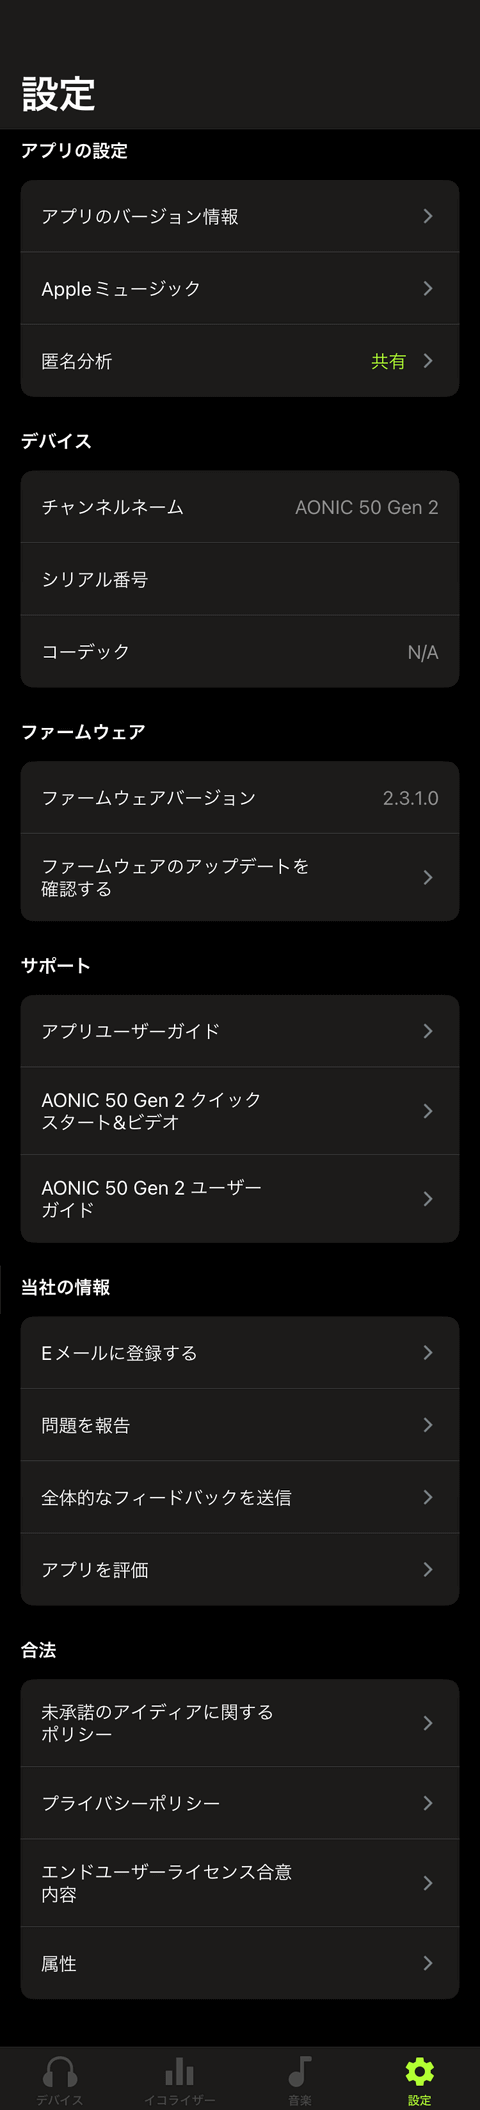 【PRレビュー】Shure ワイヤレスヘッドホン AONIC 50 GEN 2